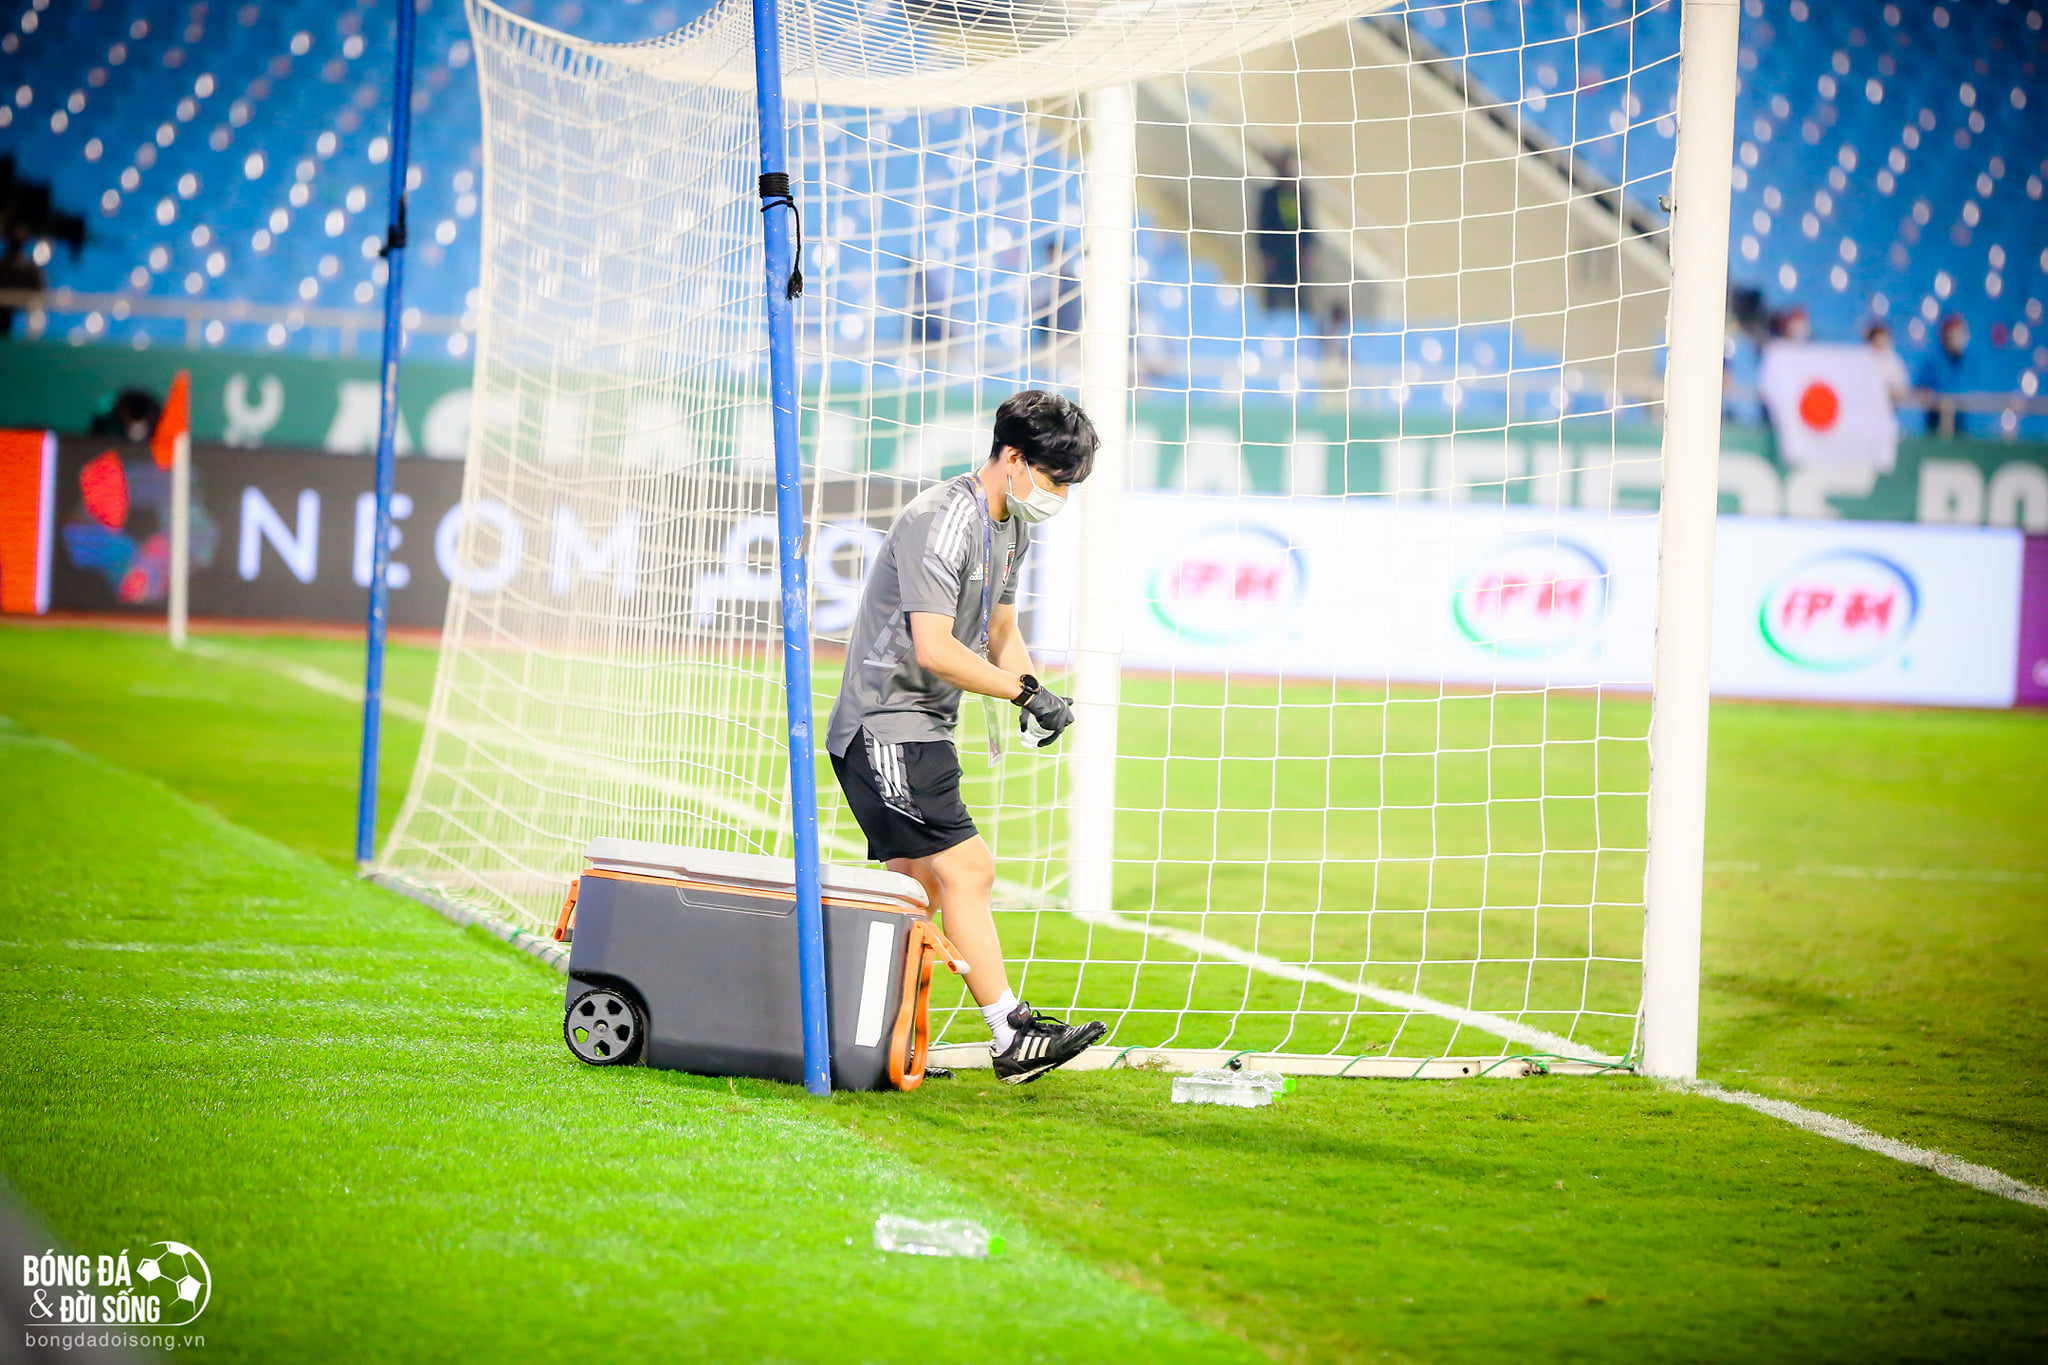 Hành động đẹp: Một thành viên của ĐT Nhật Bản đã đi quanh sân cỏ nhặt hết chai nước mà hai đội bỏ sót sau trận đấu - ảnh 2